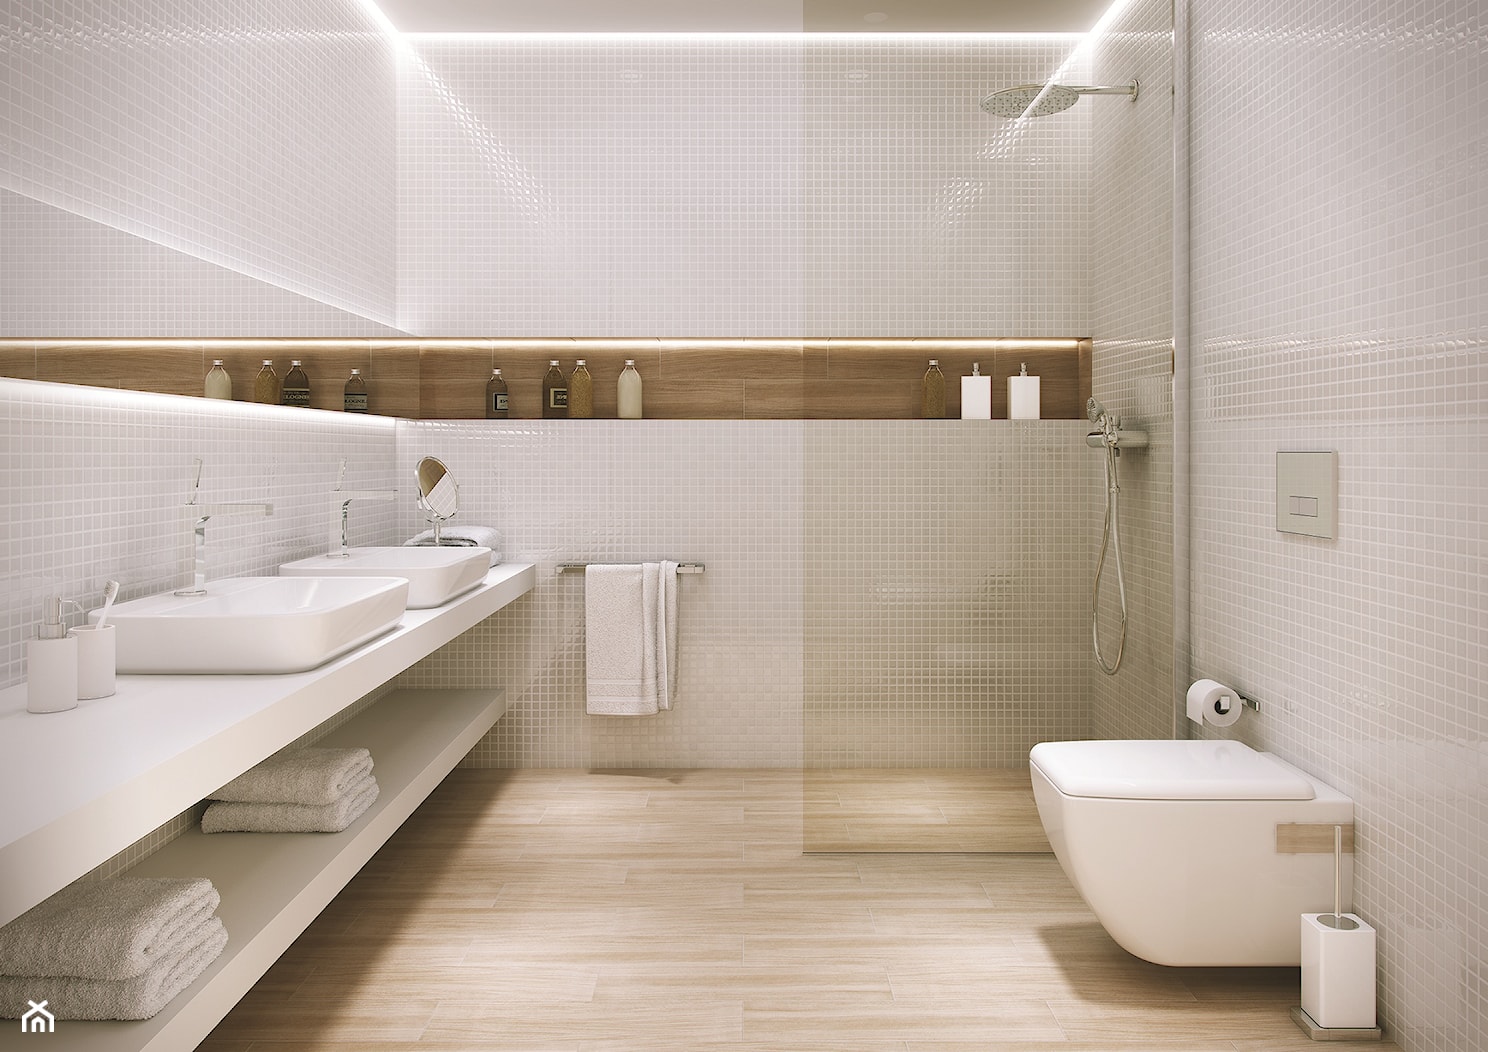 Duża z dwoma umywalkami łazienka - zdjęcie od eplytki.pl - Homebook